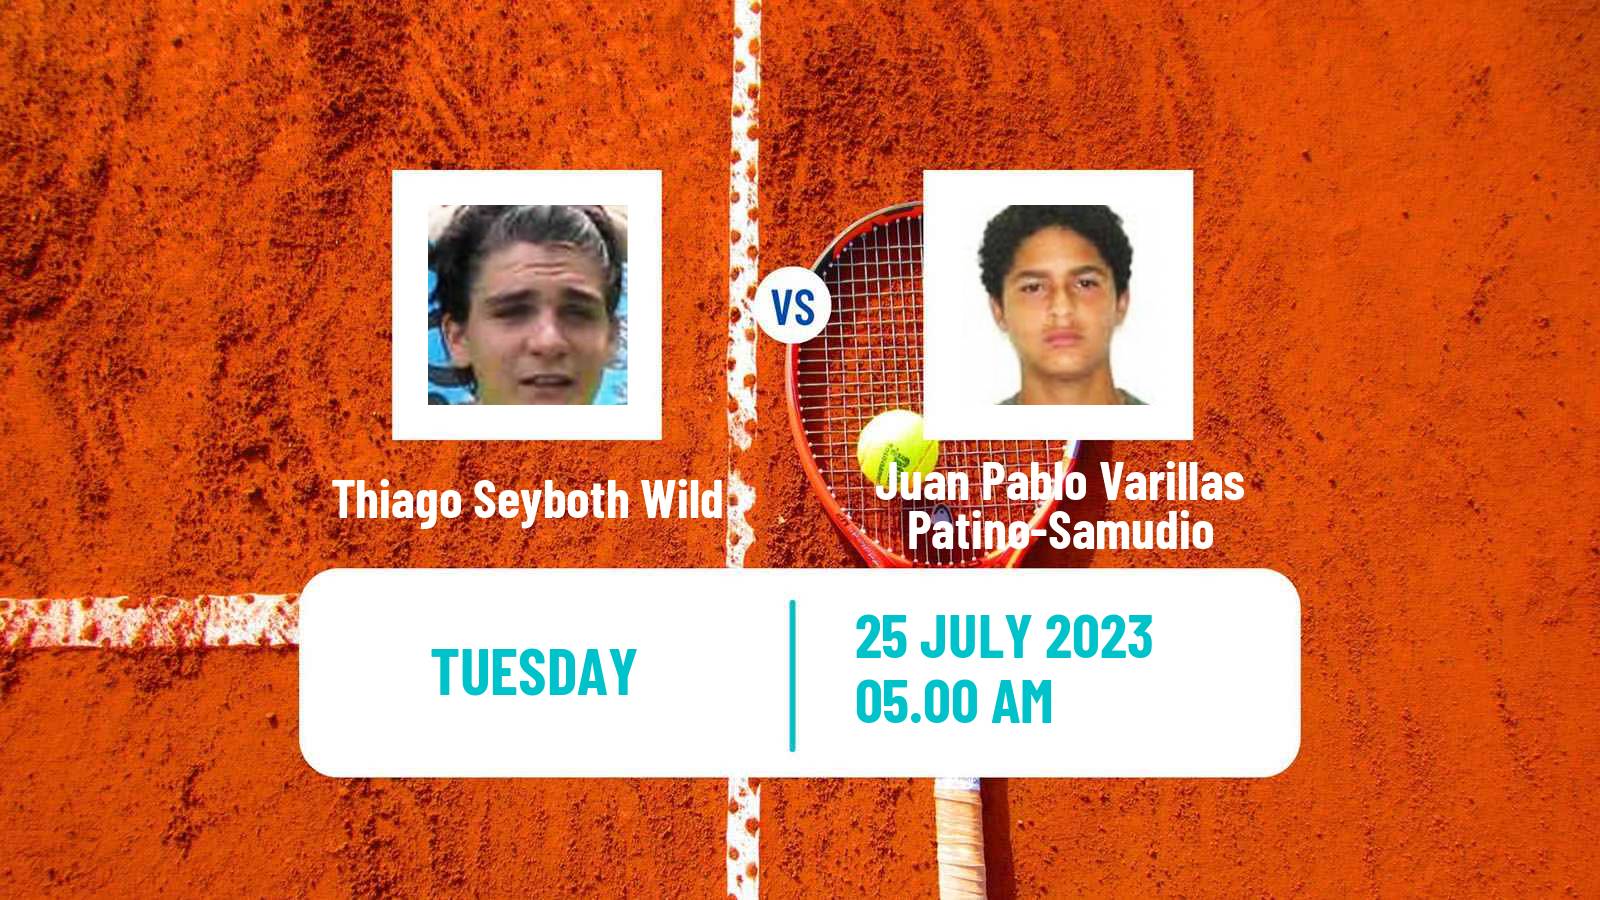 Tennis ATP Hamburg Thiago Seyboth Wild - Juan Pablo Varillas Patino-Samudio